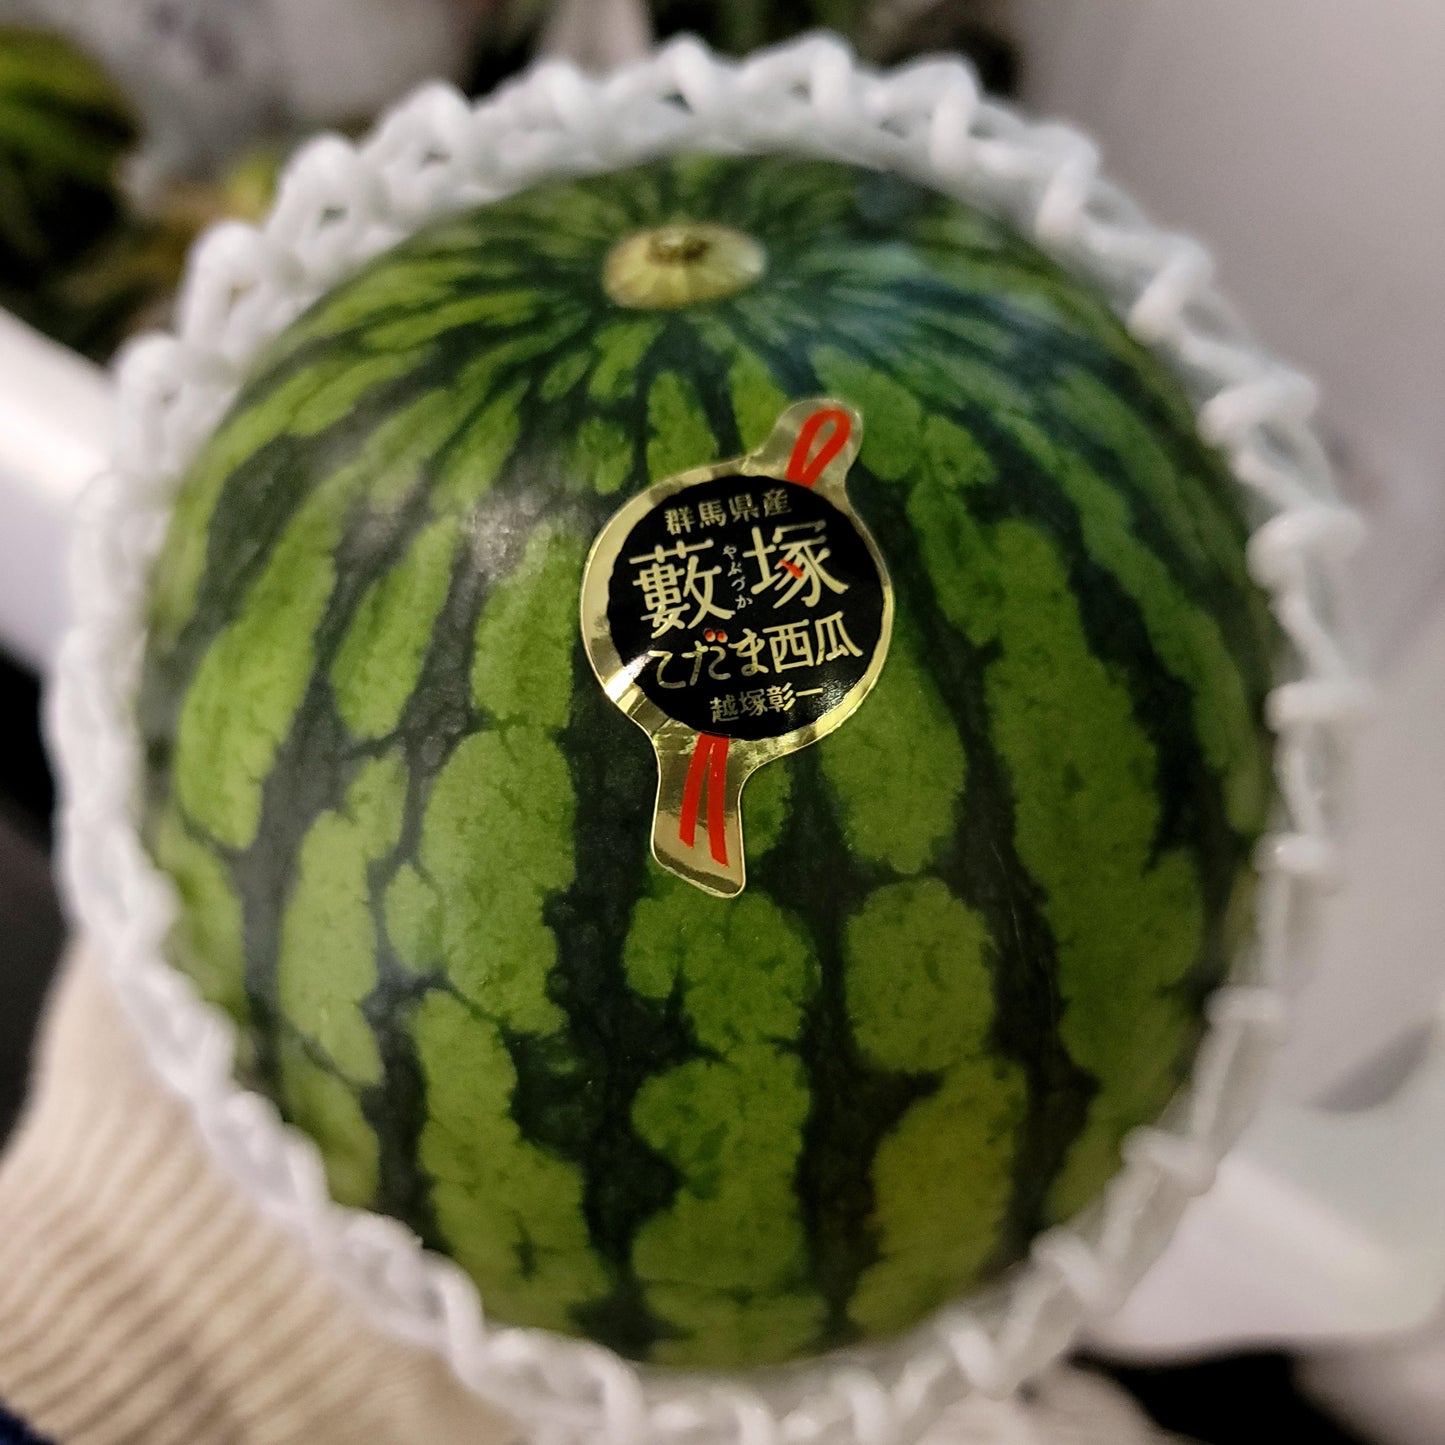 Yabuzuka Kodama Watermelon 群馬藪塚小玉西瓜